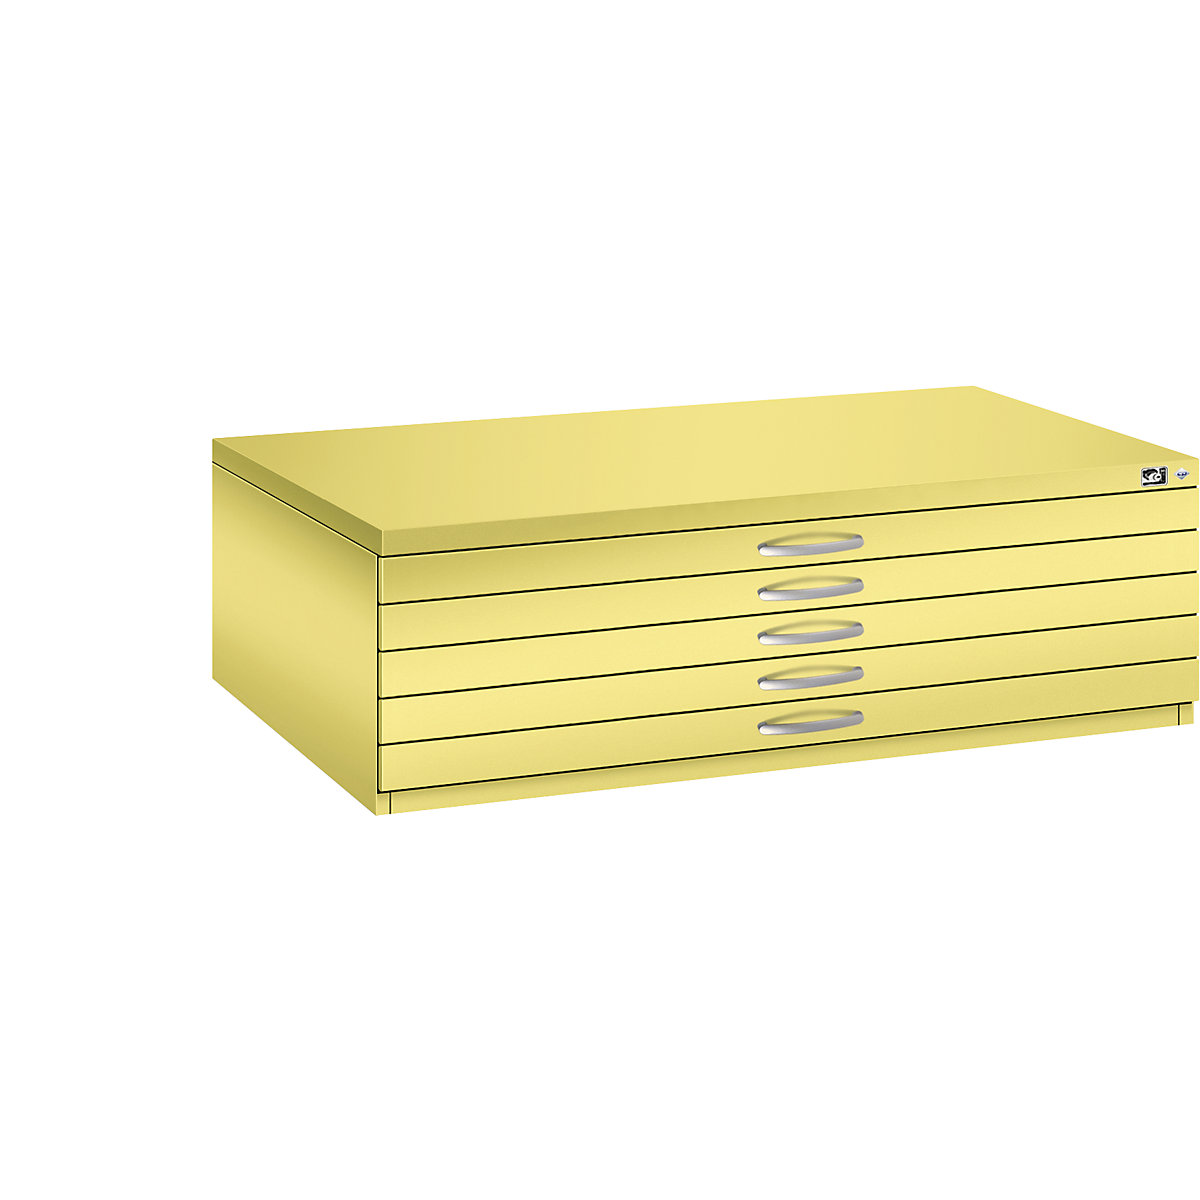 Archivio per disegni – C+P, UNI A0, 5 cassetti, altezza 420 mm, giallo zolfo-17